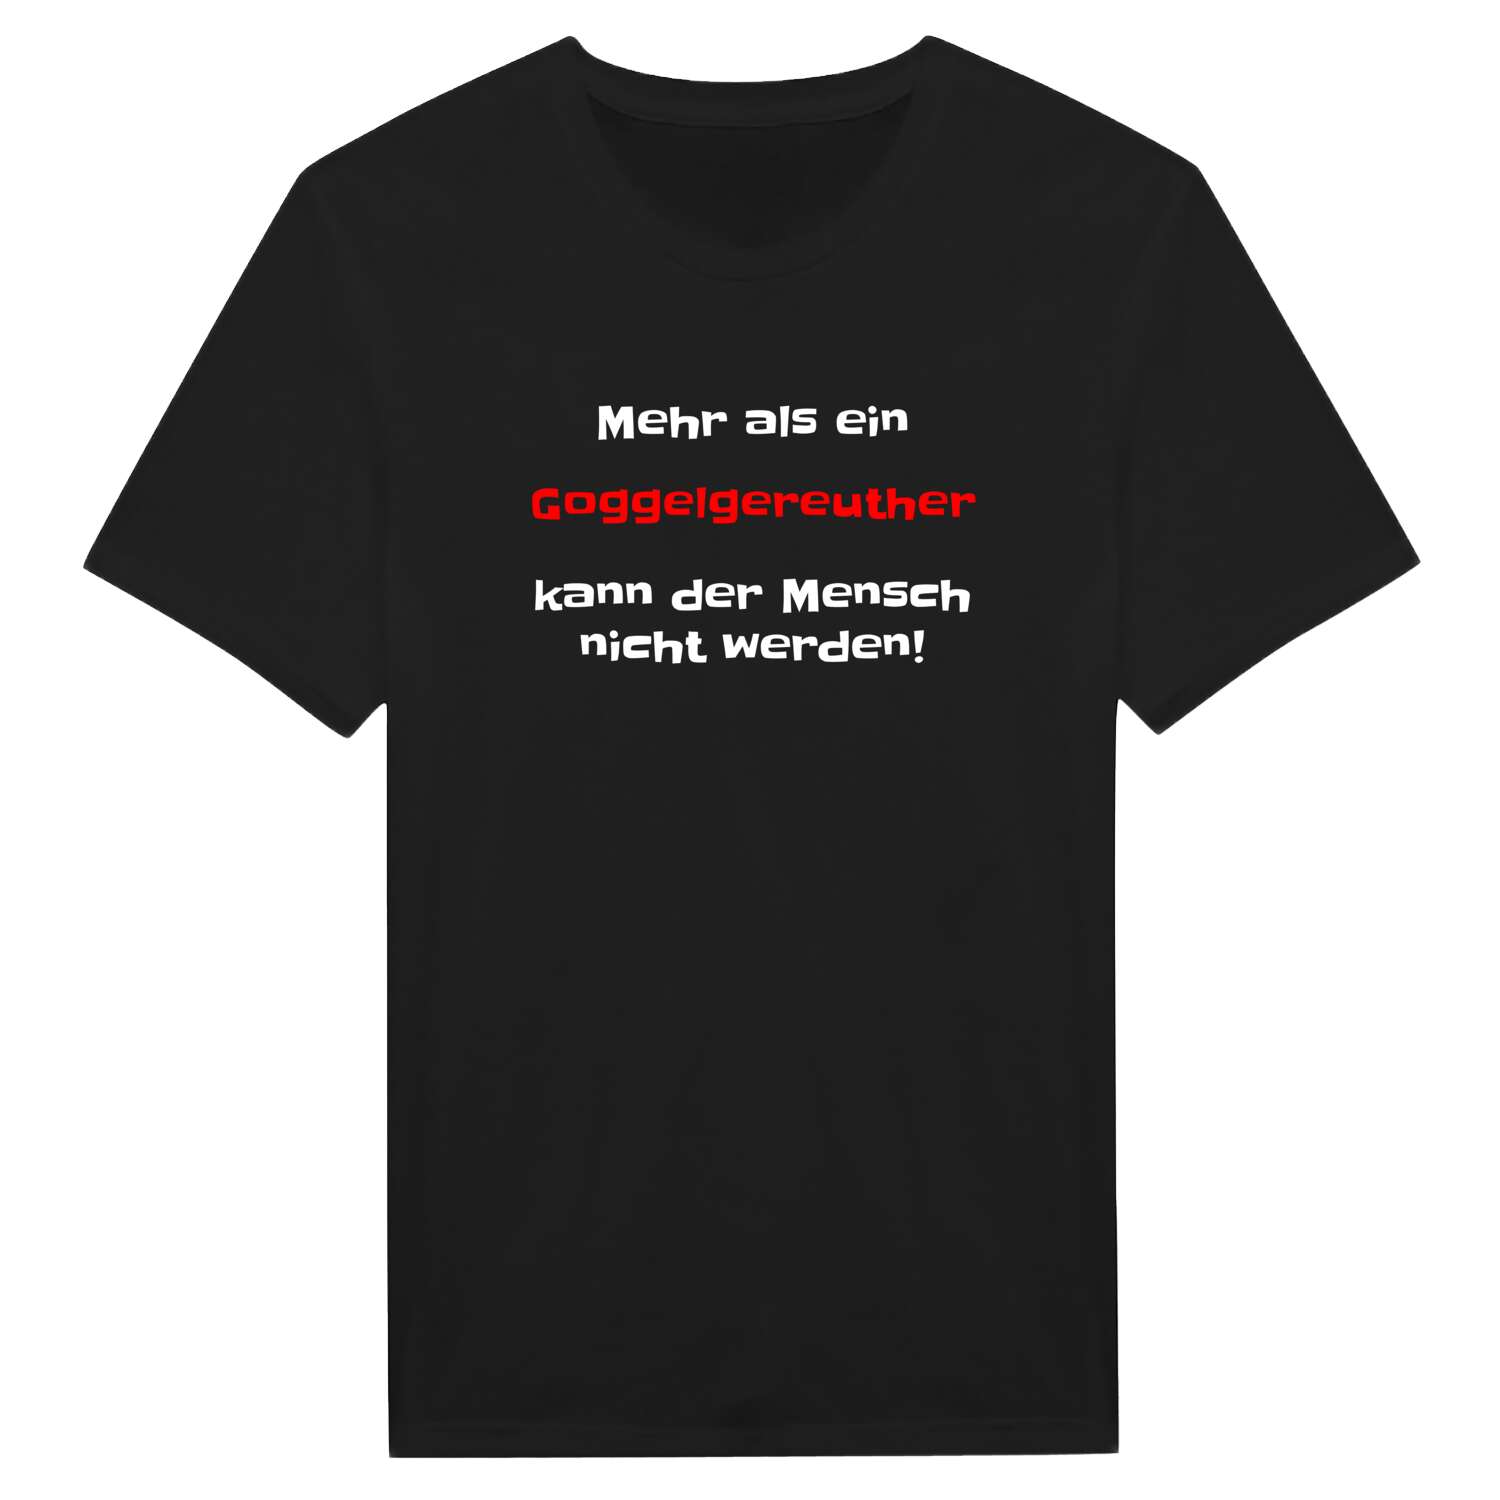 Goggelgereuth T-Shirt »Mehr als ein«